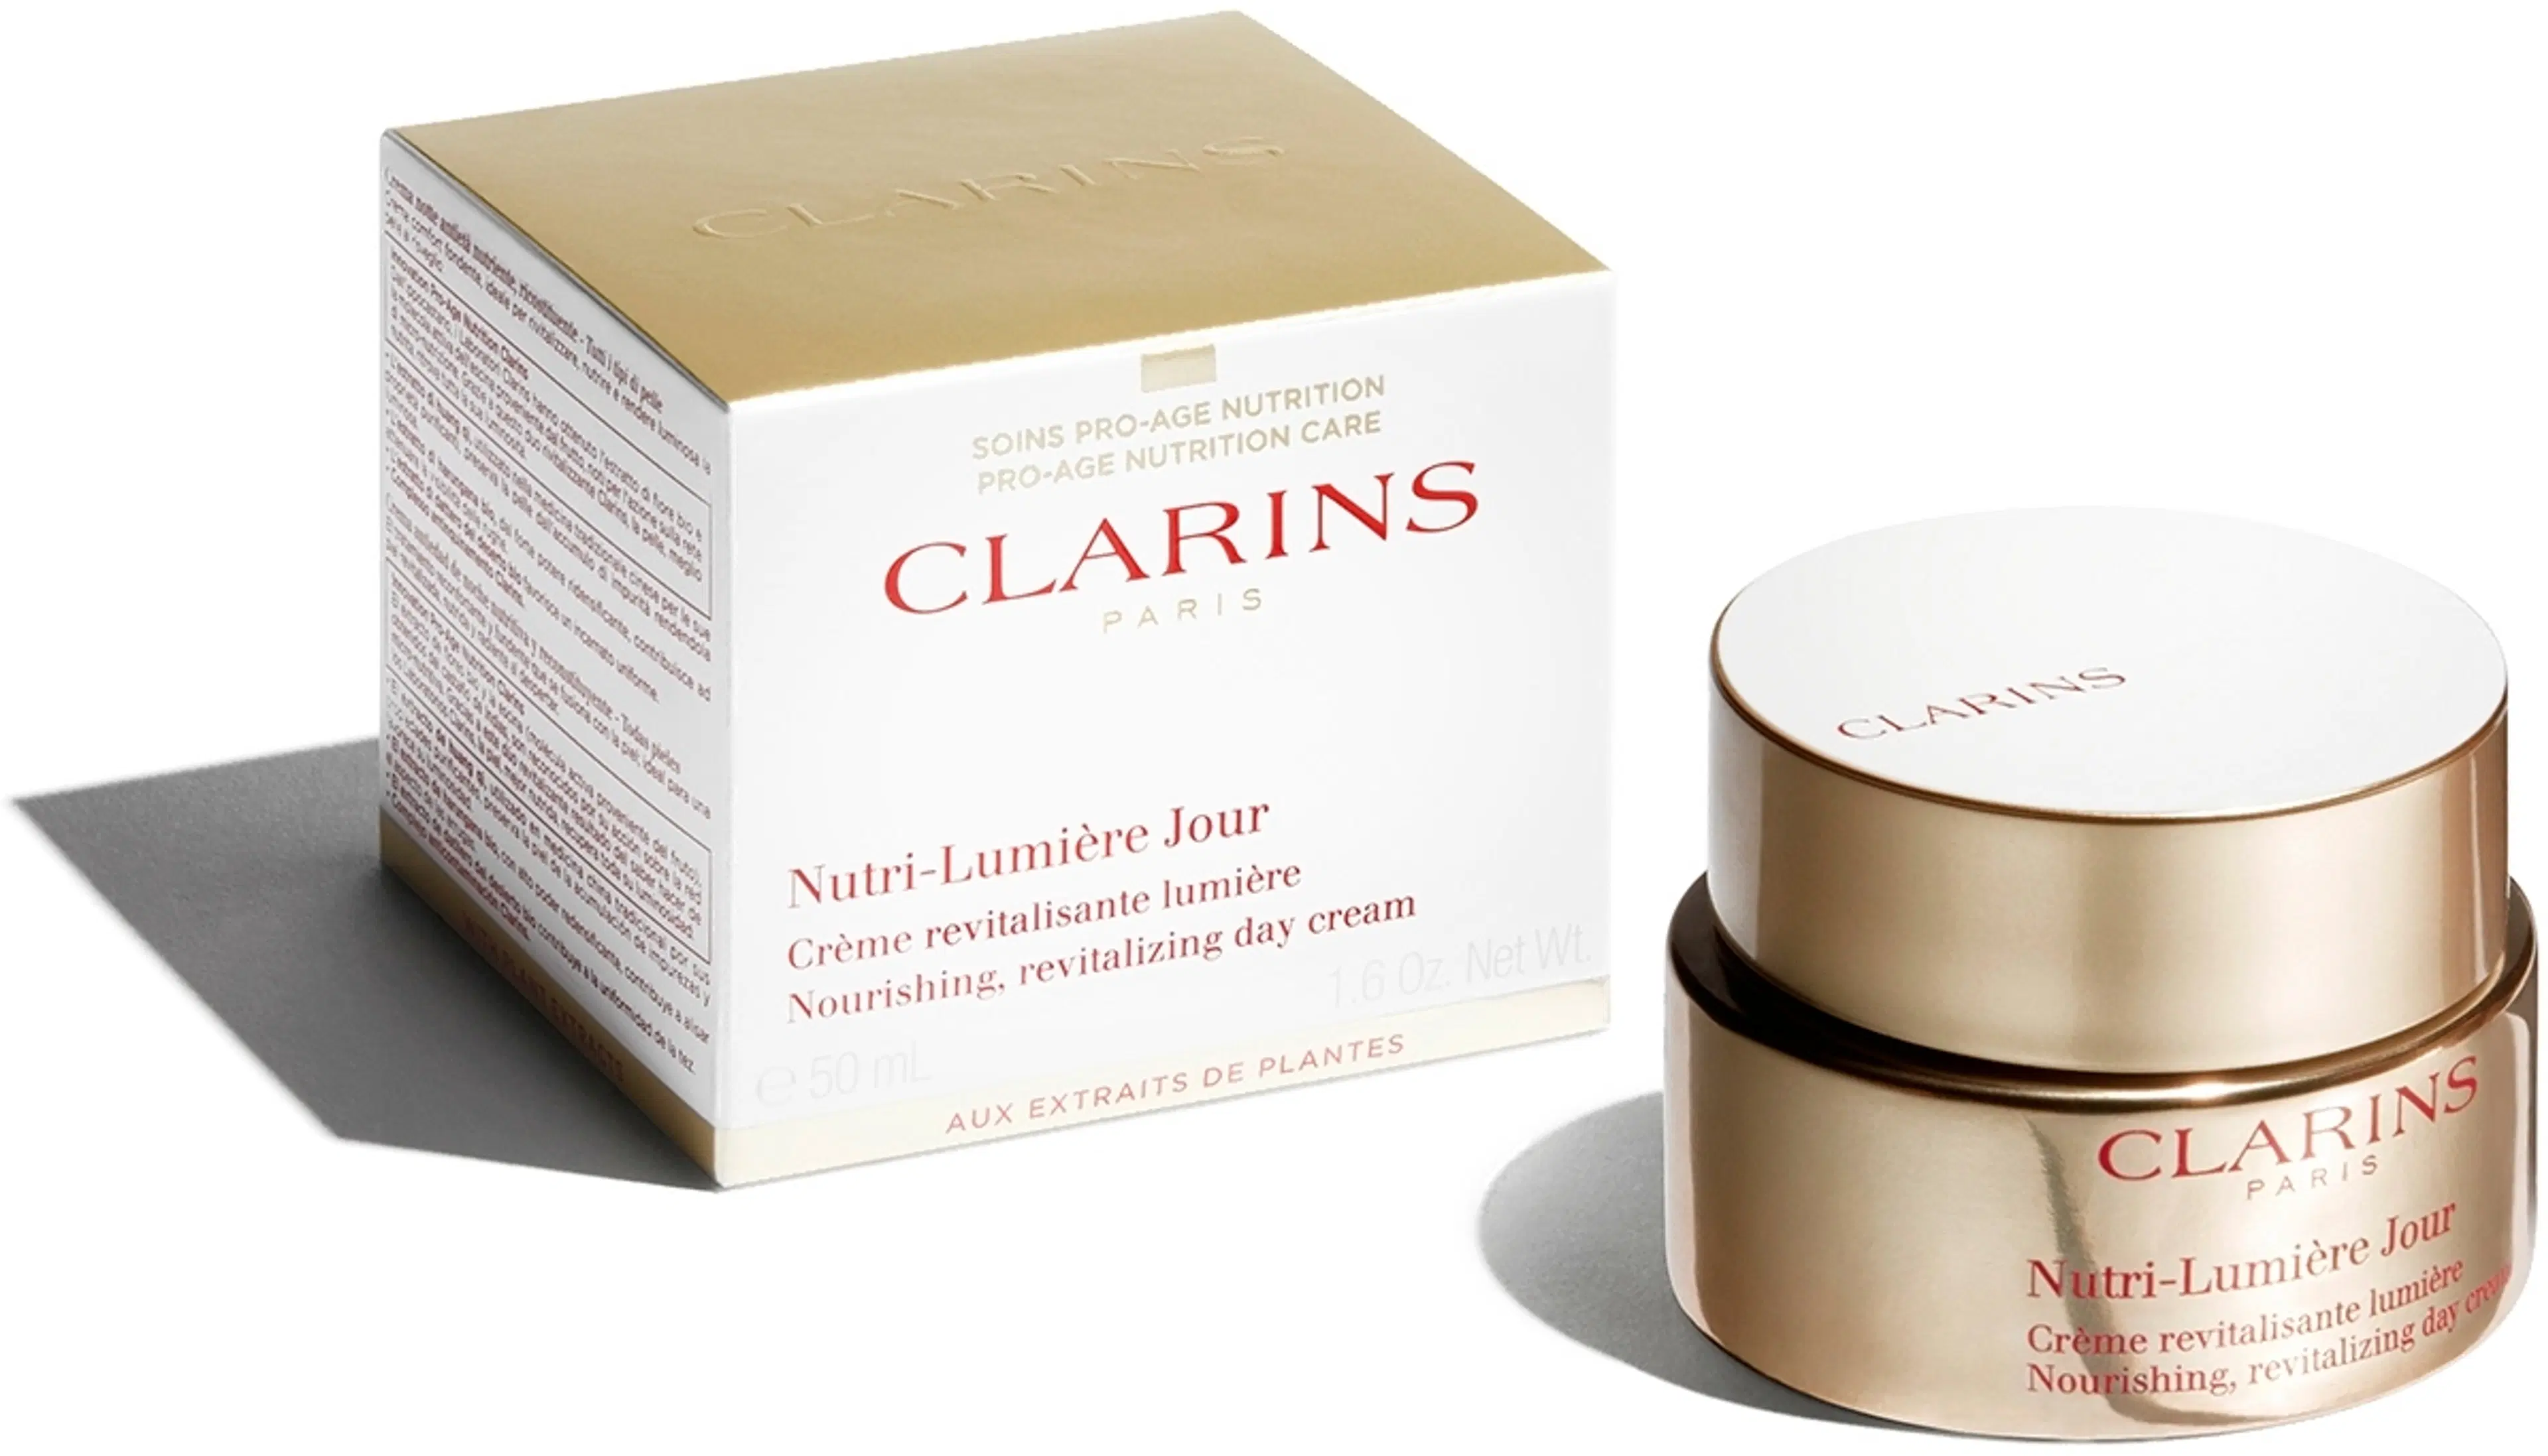 Clarins Nutri-Lumière Day Cream päivävoide 50 ml